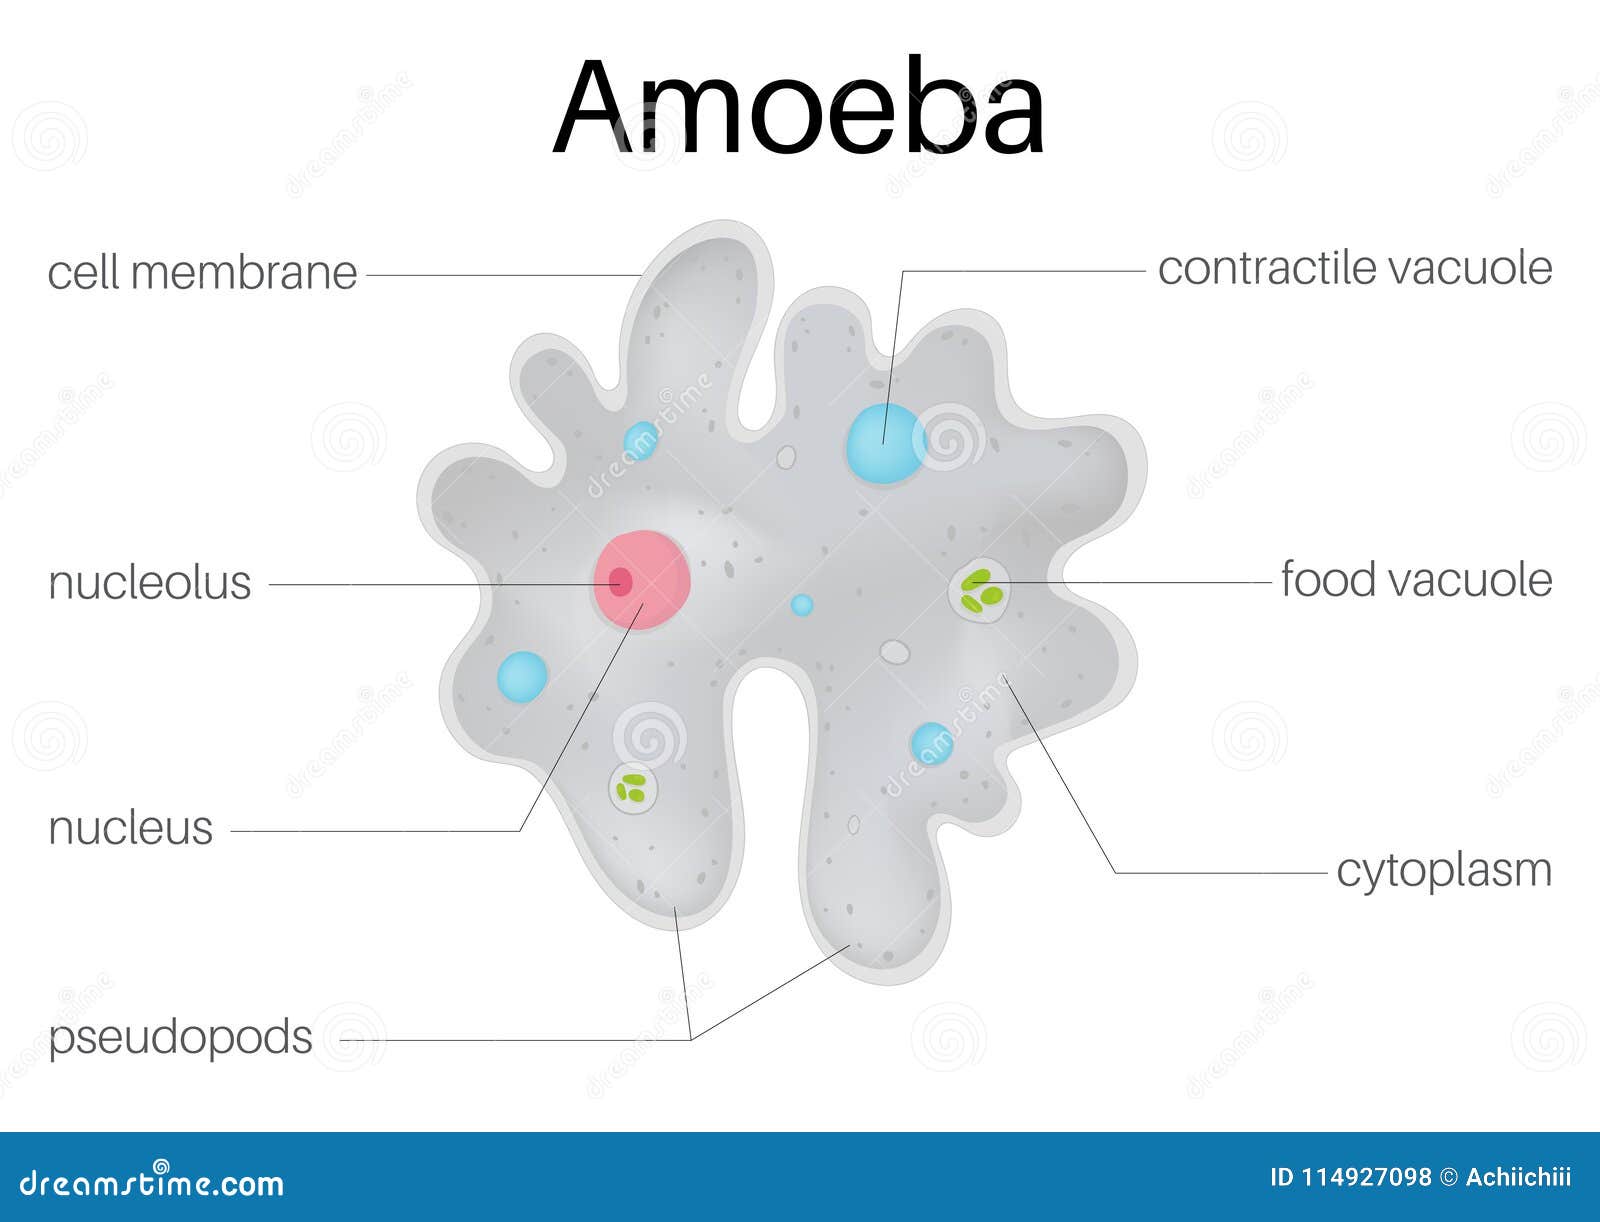 theÃÂ structure andÃÂ diagramÃÂ ofÃÂ  amoeba